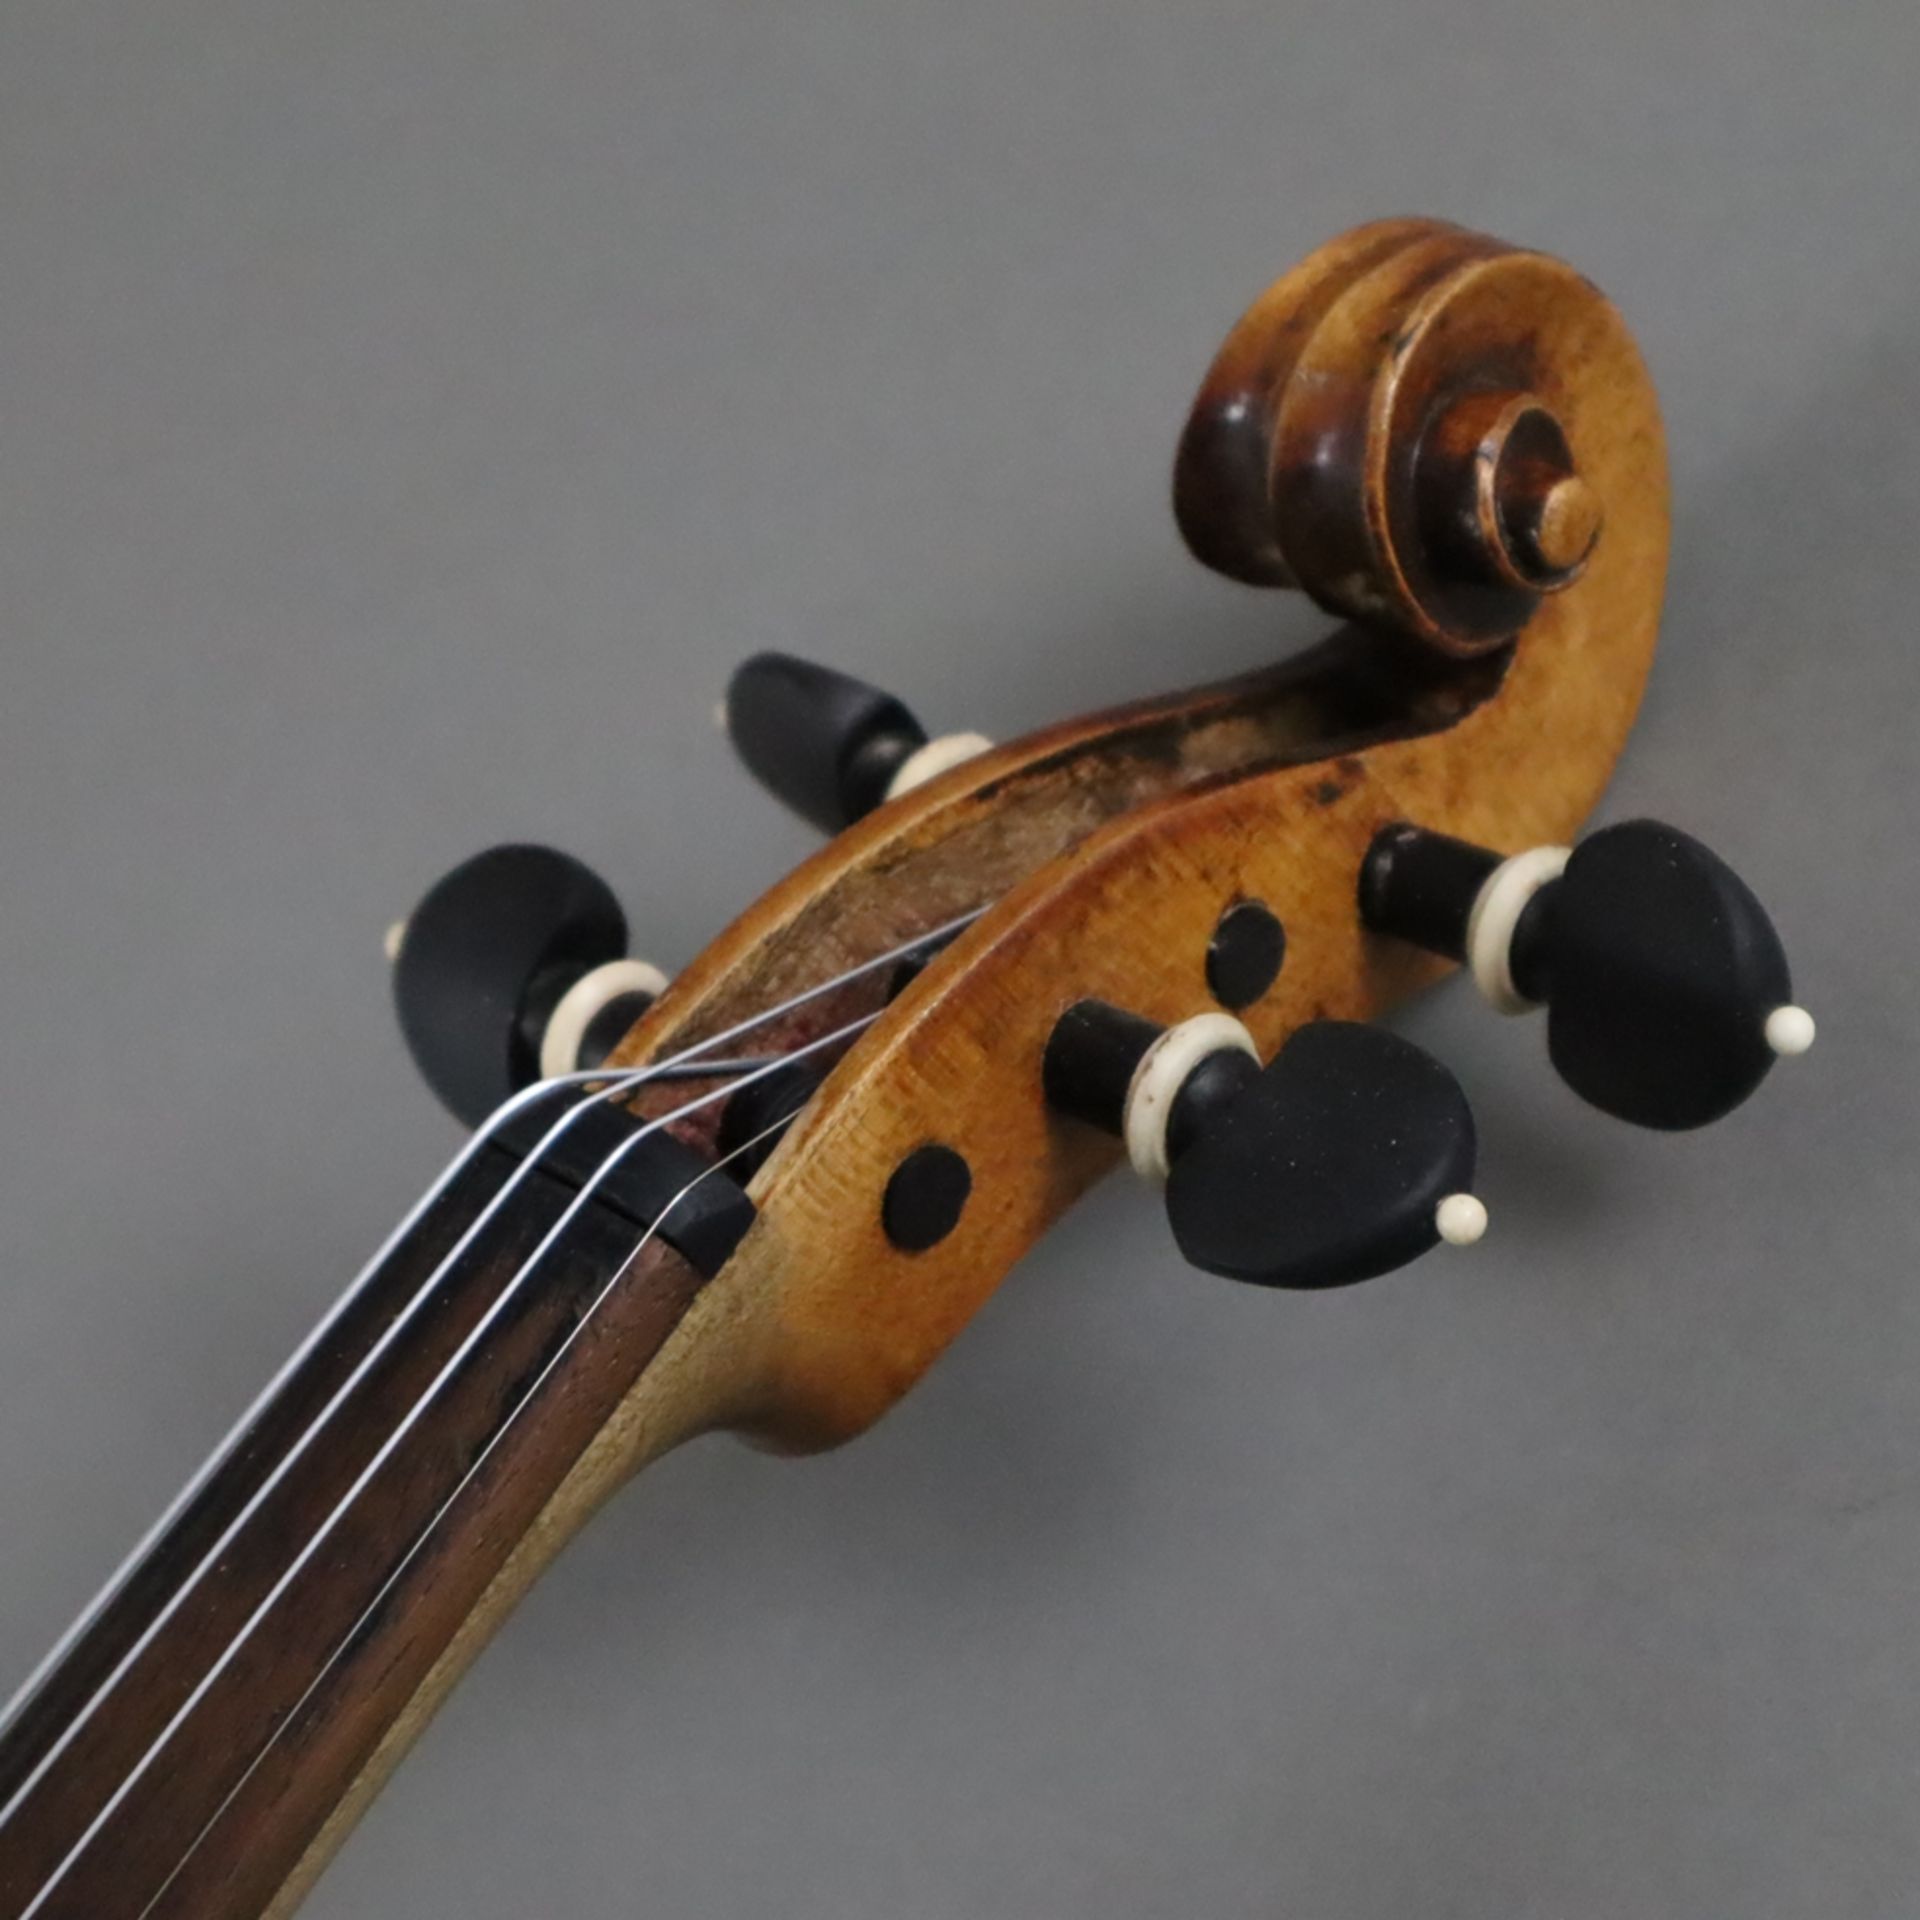 Schmale Geige - Italien, auf dem Faksimile-Etikett bezeichnet "Paolo Leonori / Roma 1949", einteili - Bild 2 aus 7